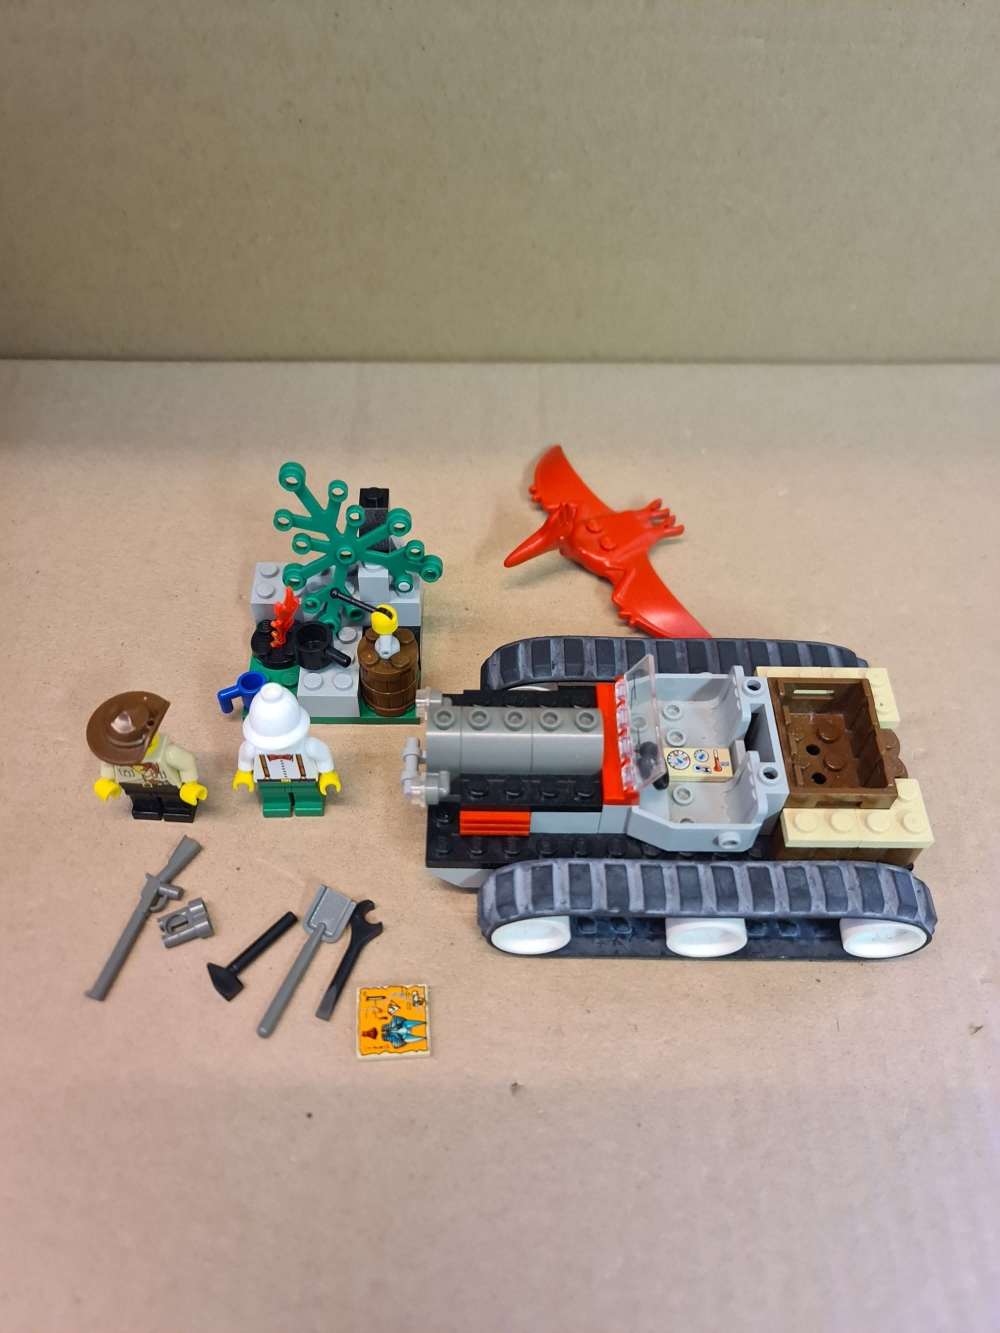 Sett 5934 fra Lego Adventurers : Desert serien.
Meget pent.
Komplett med manual.